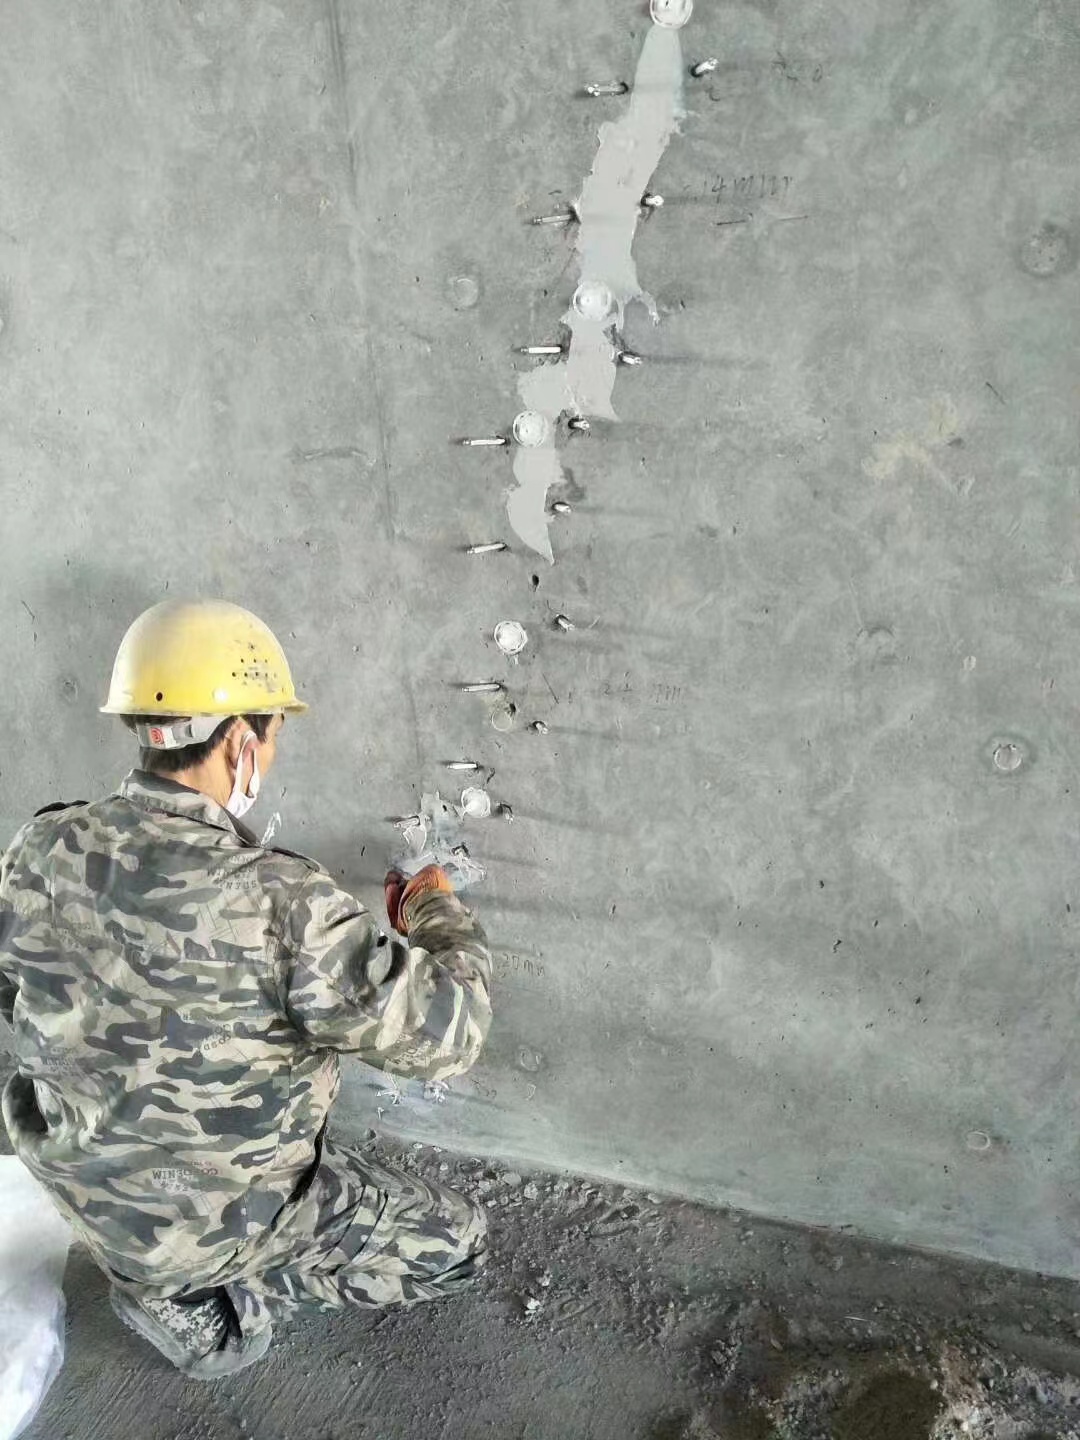 天津混凝土楼板裂缝加固施工的方案